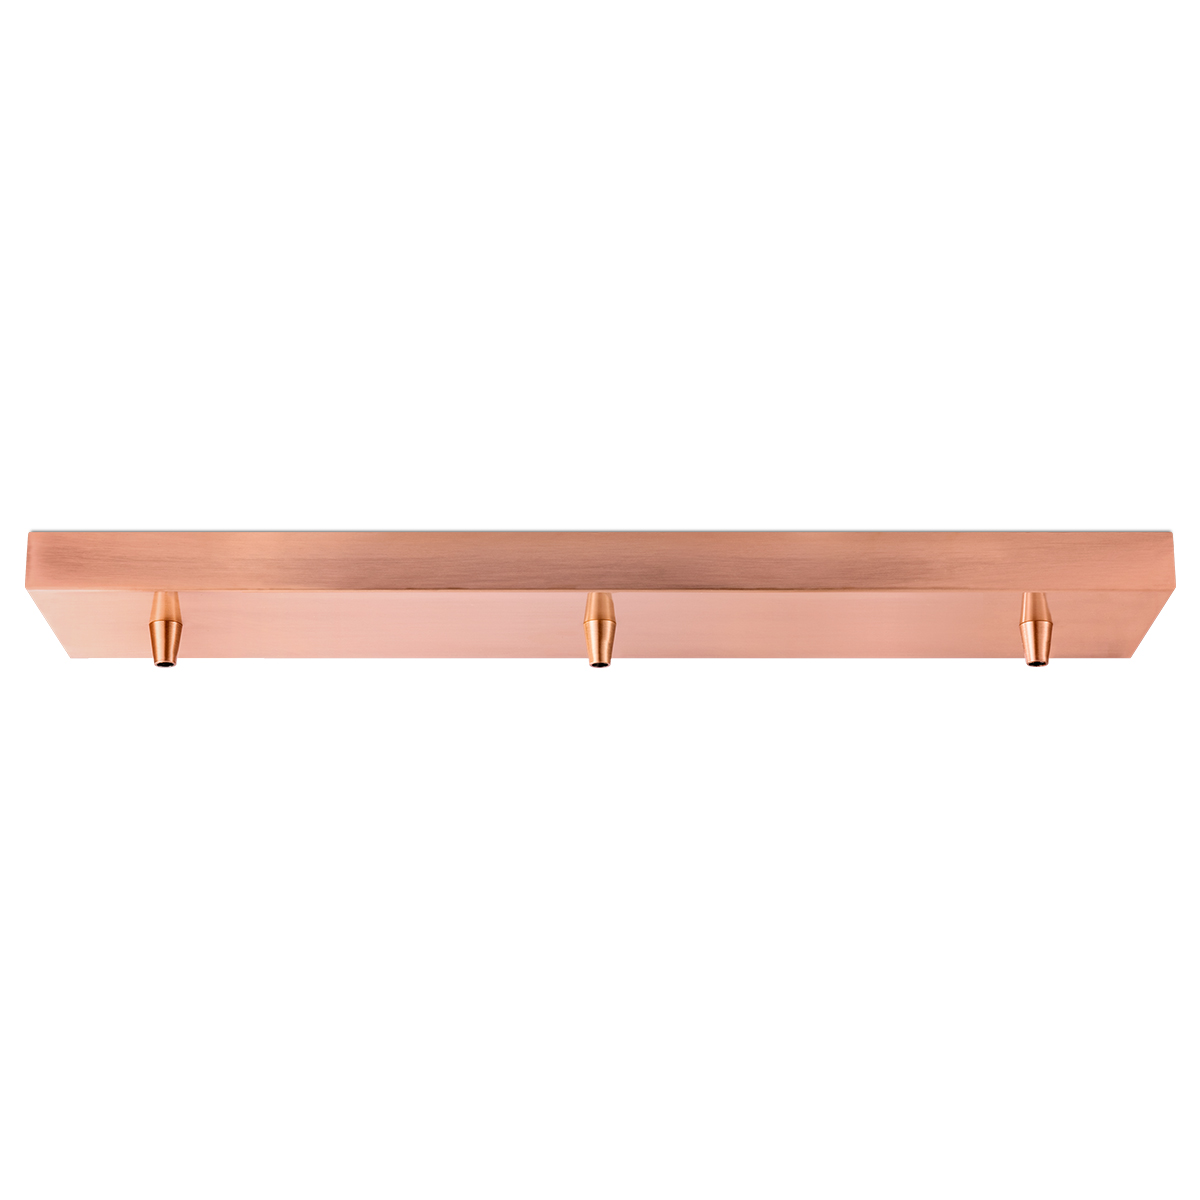 Metal 3L bar canopy - copper